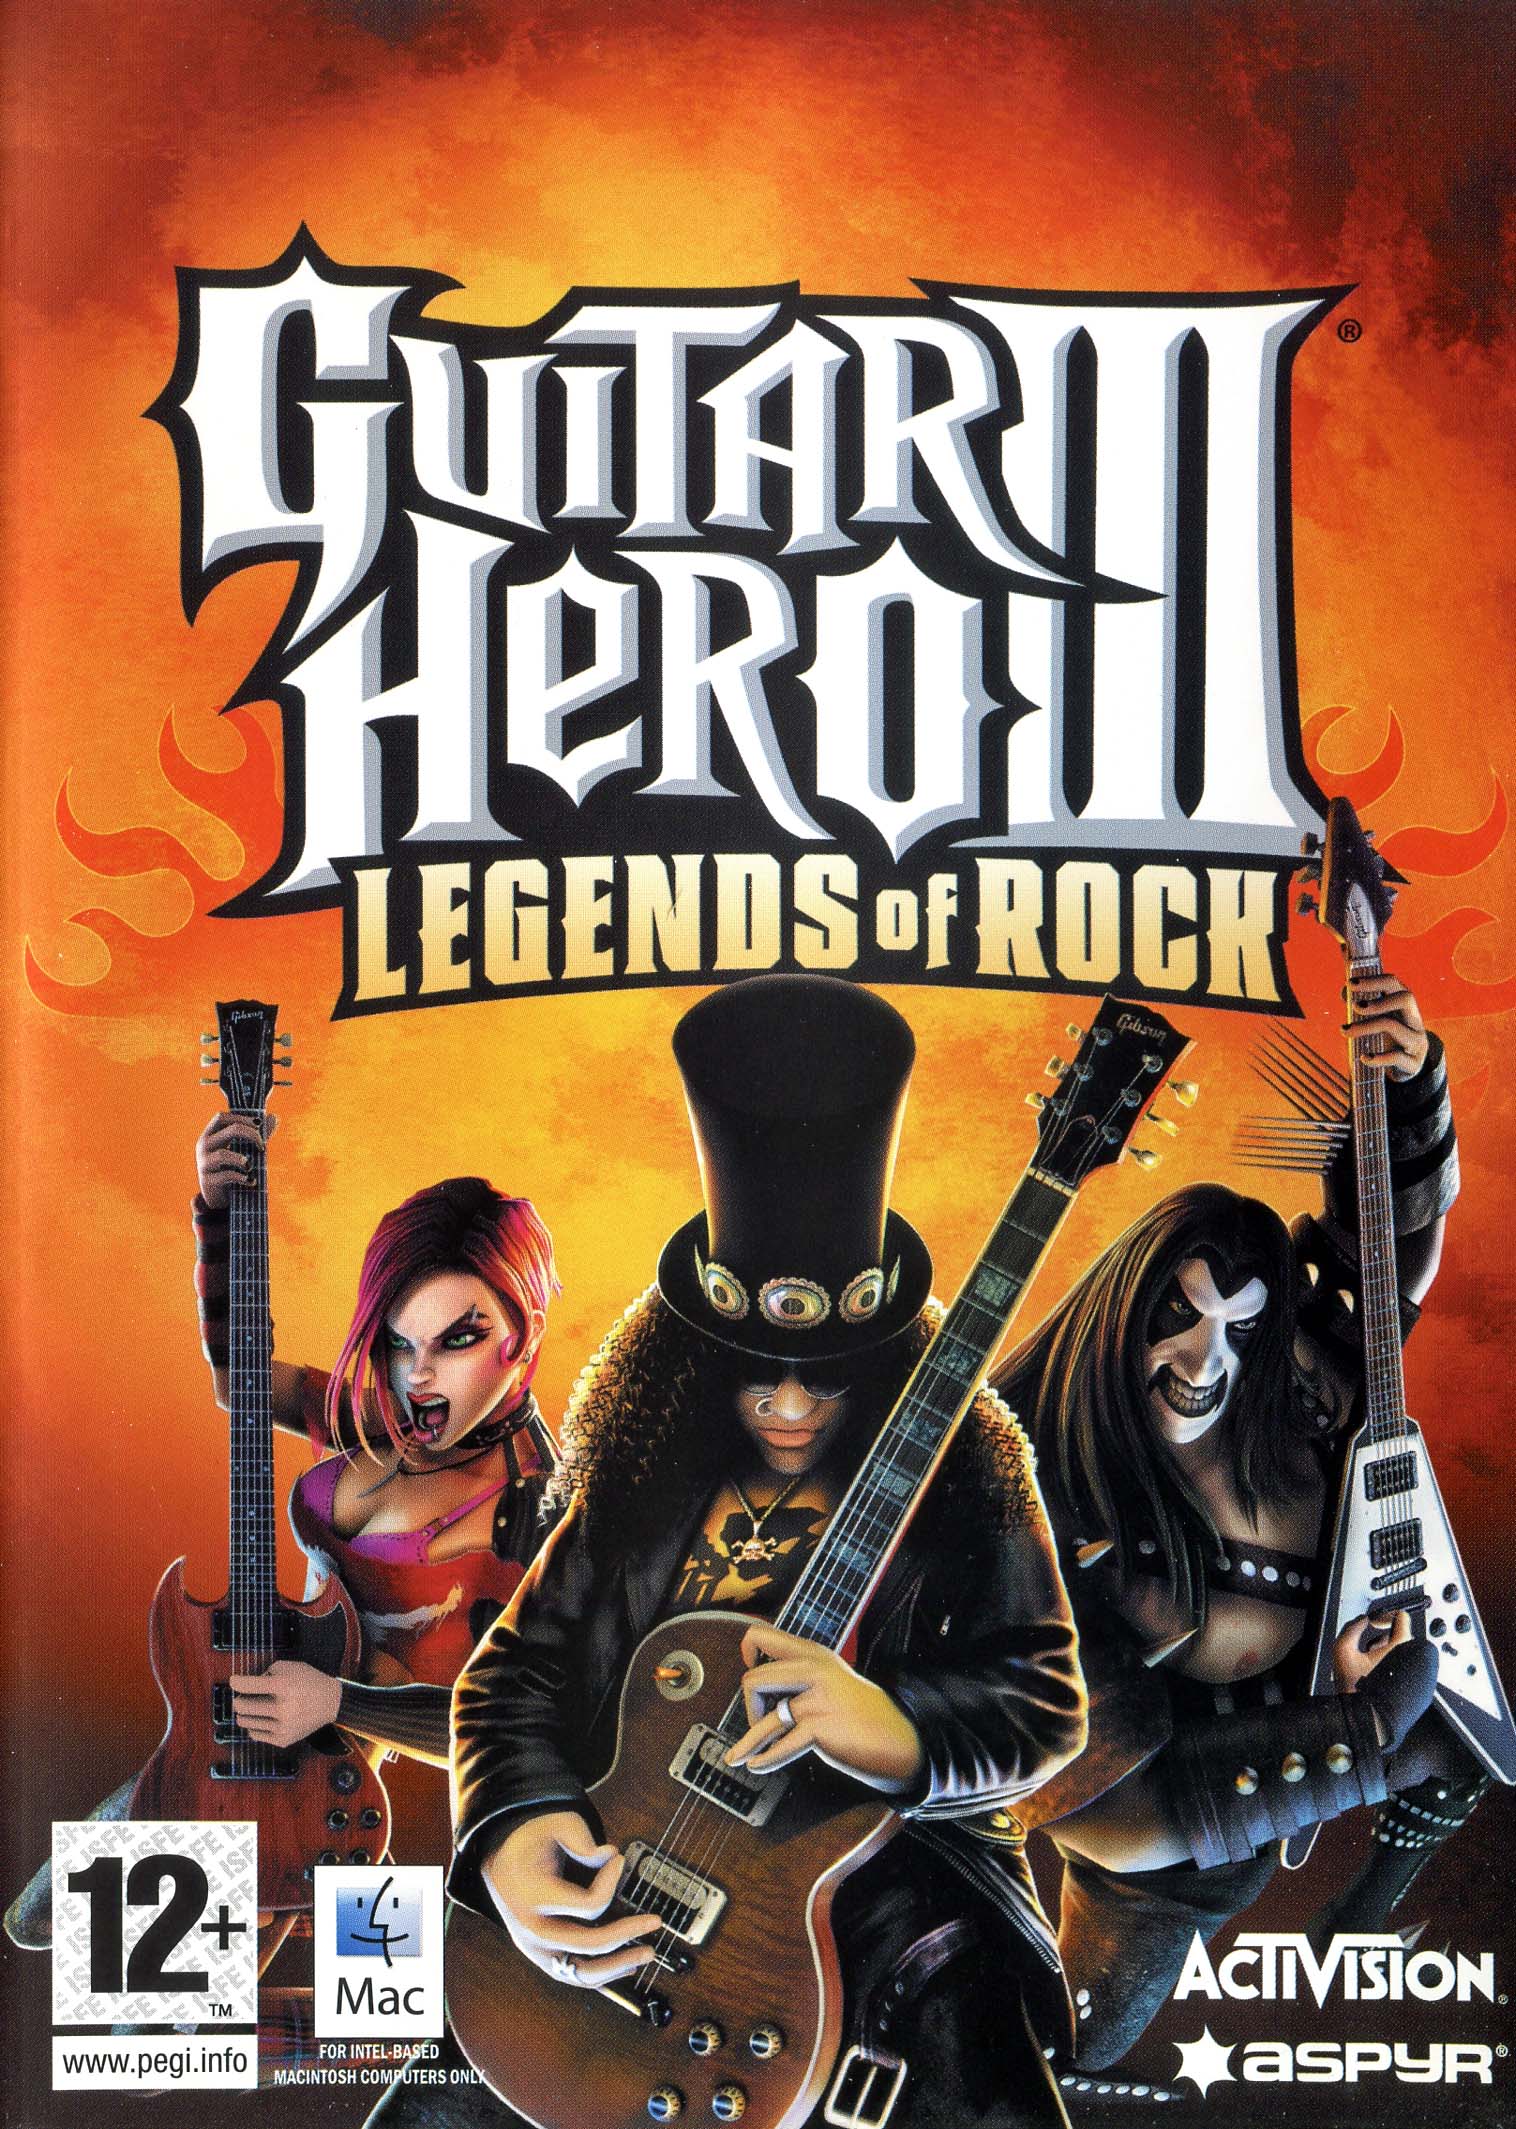 Guitar hero 3 digital download